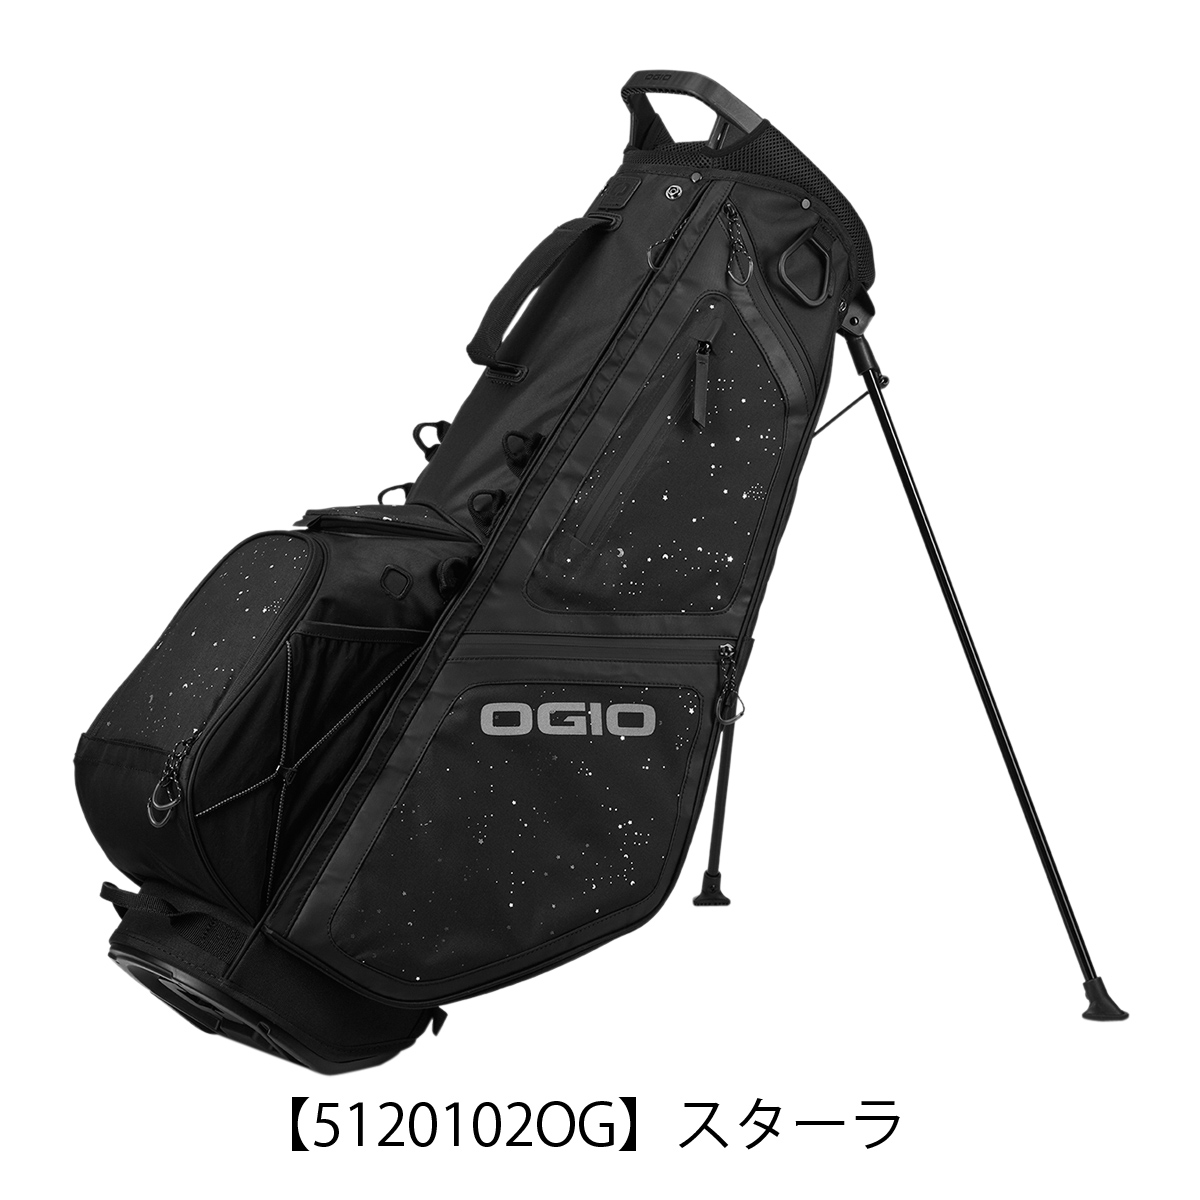 オジオ ゴルフ キャディバッグ ゴルフバッグ スタンド型 XIX 5120099OG 